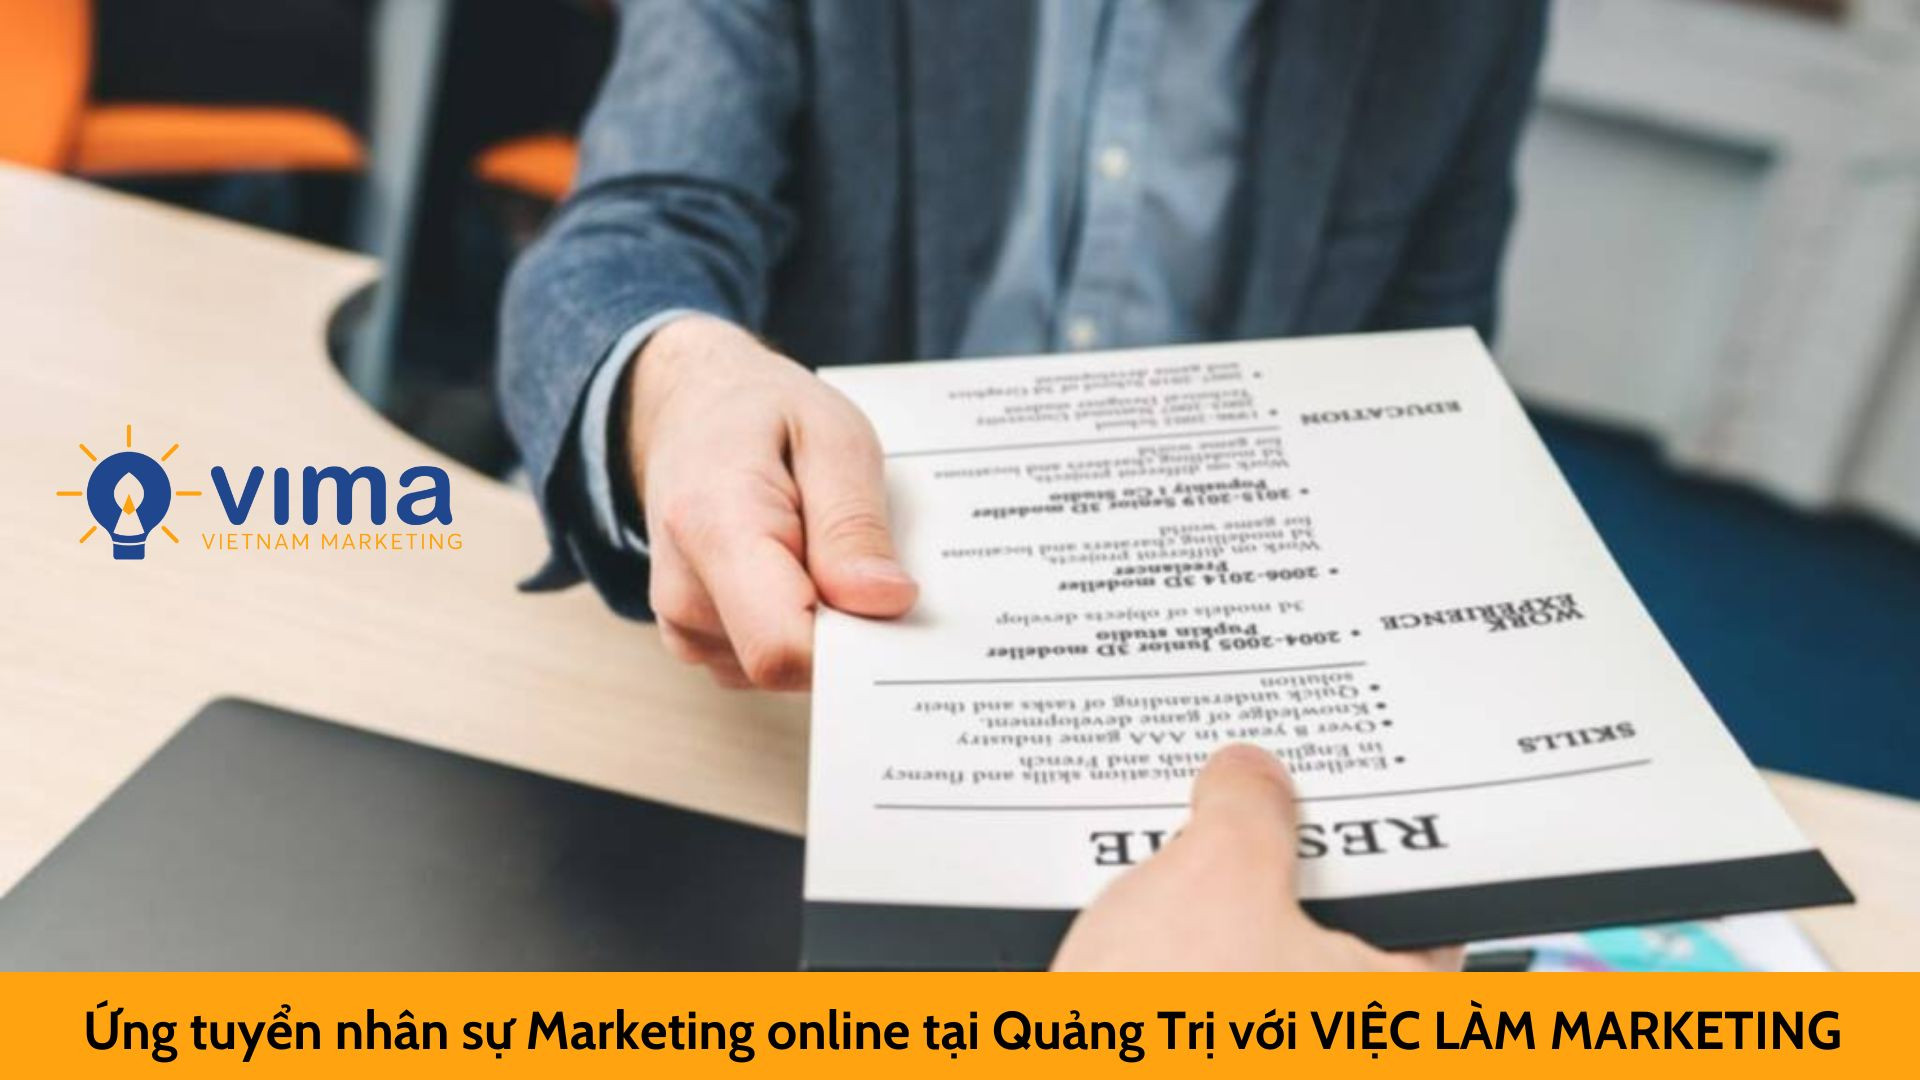 Ứng tuyển nhân sự Marketing online tại Quảng Trị với VIỆC LÀM MARKETING